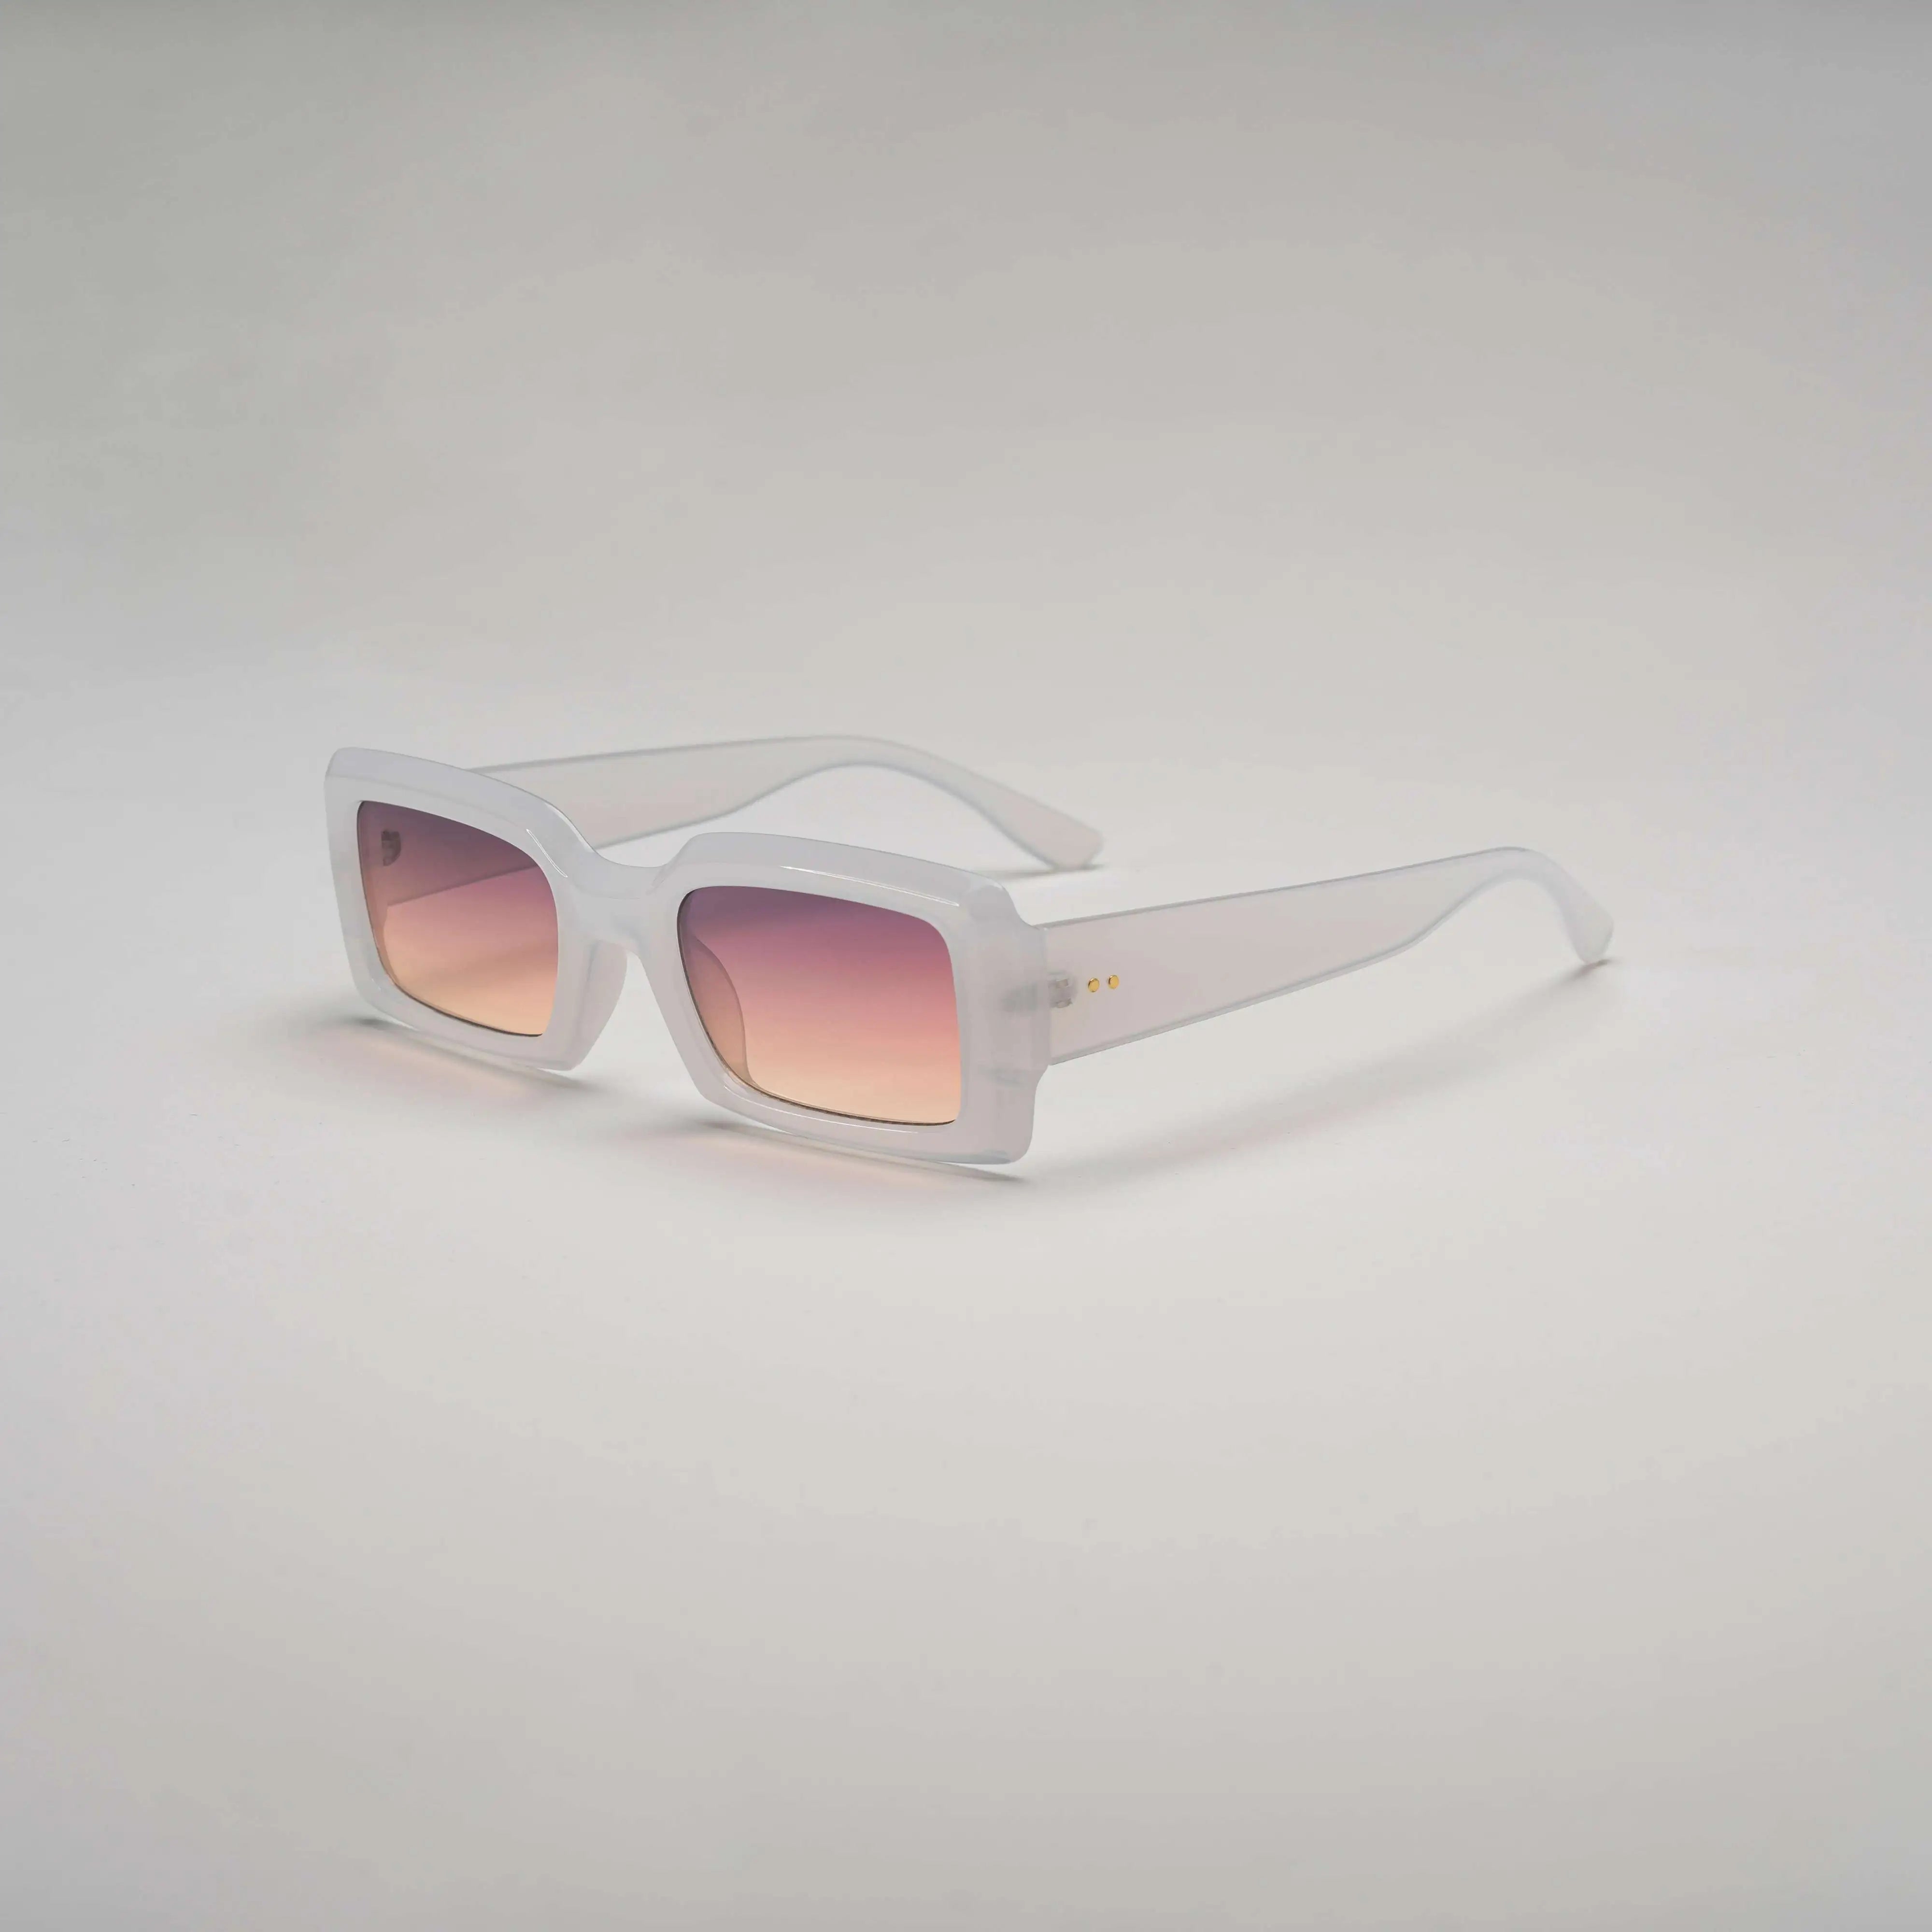 'Dream In Colour' Retro Square Sunglasses in White & Peach